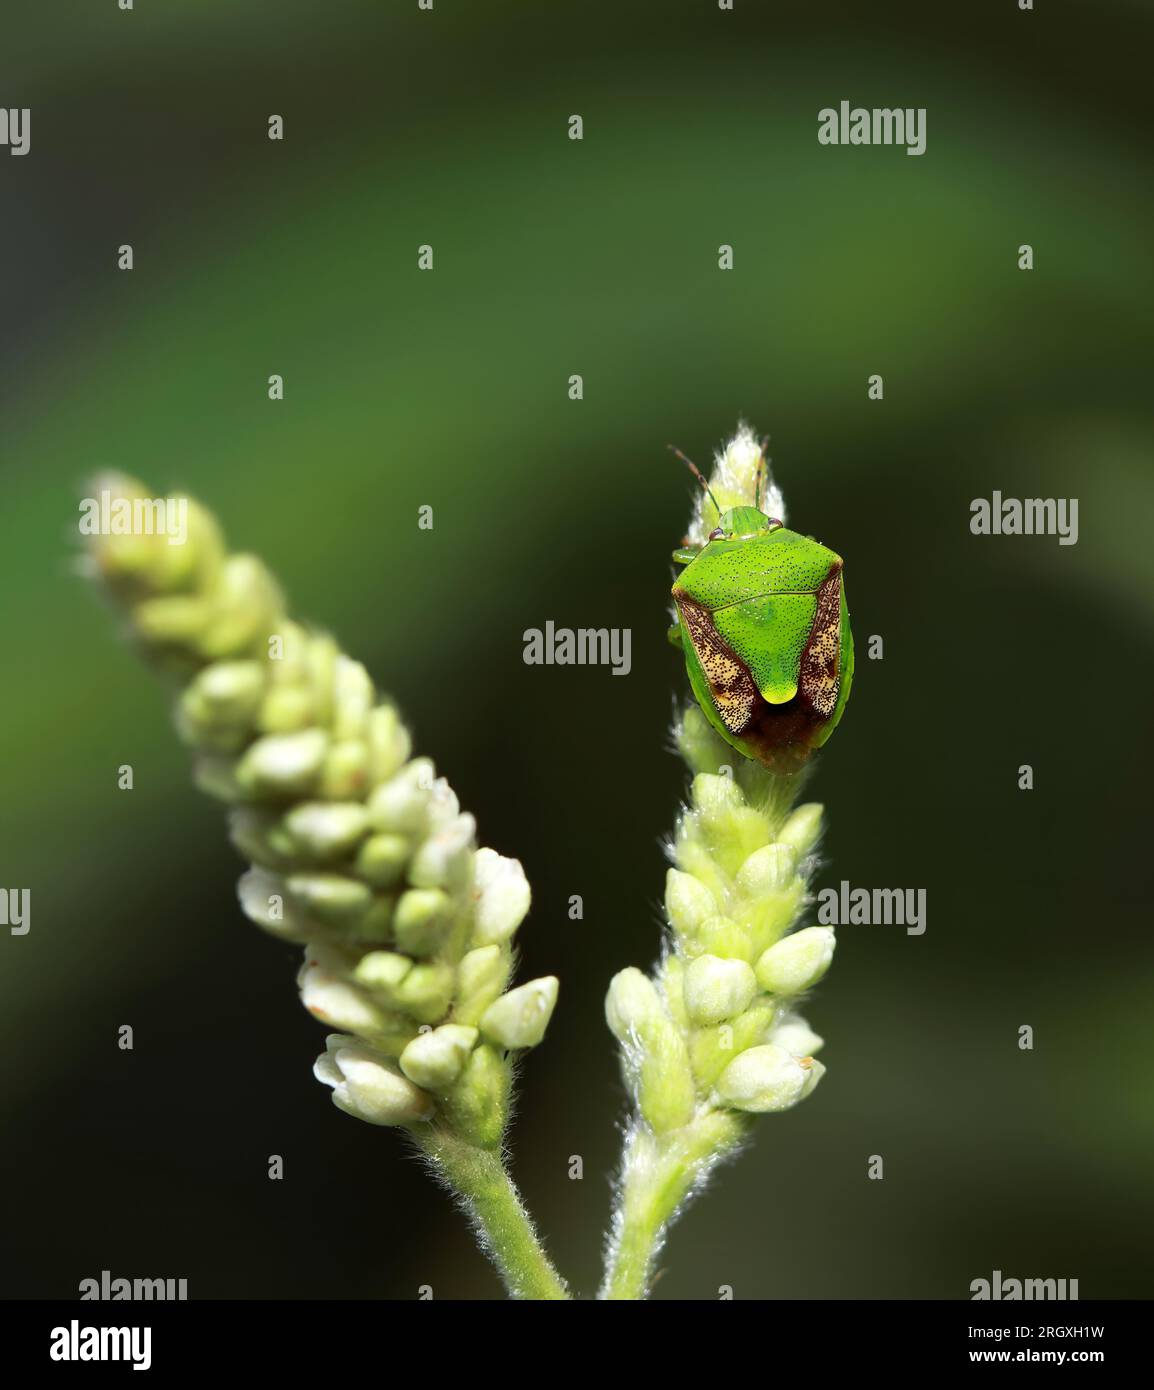 Ein farbiger Käfer auf einer Blume. Dieses Makrofoto wurde aus Bangladesch gemacht. Stockfoto